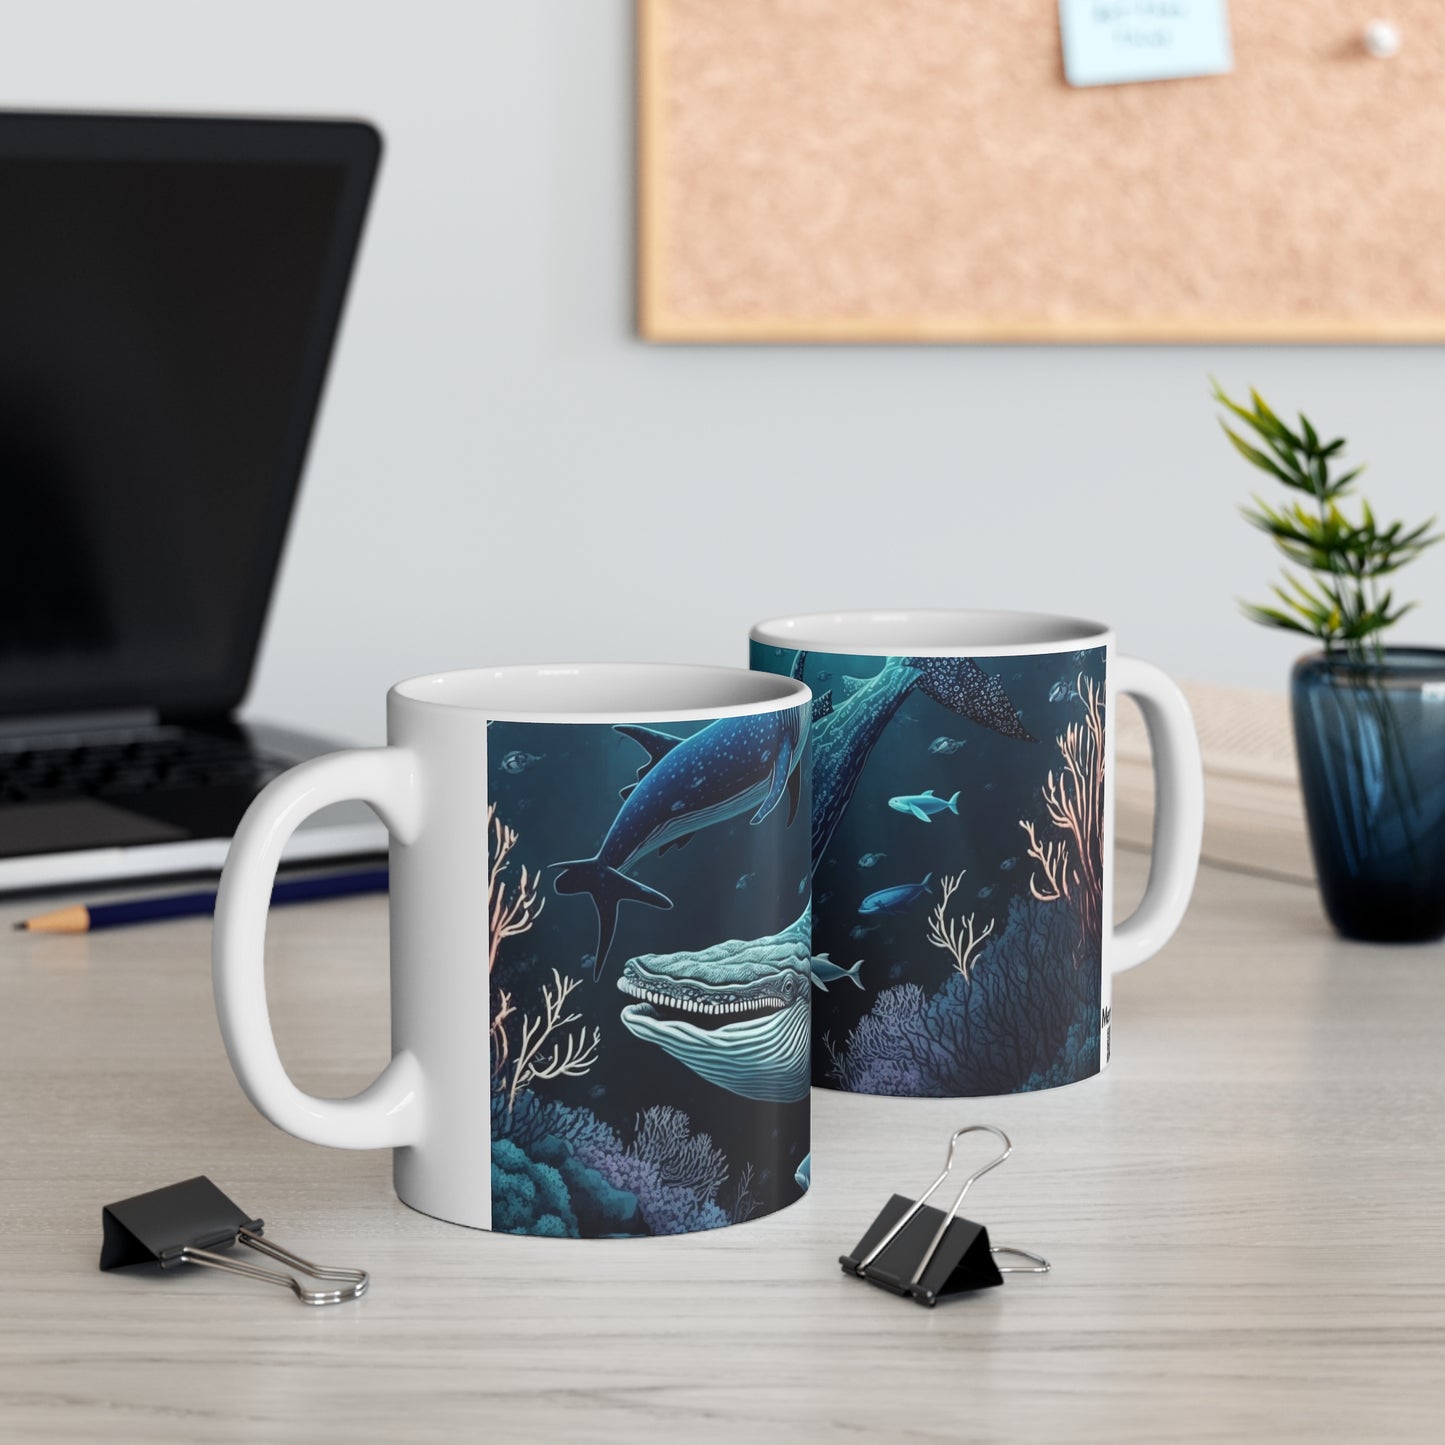 Blue whale - Ceramic Mug 11oz